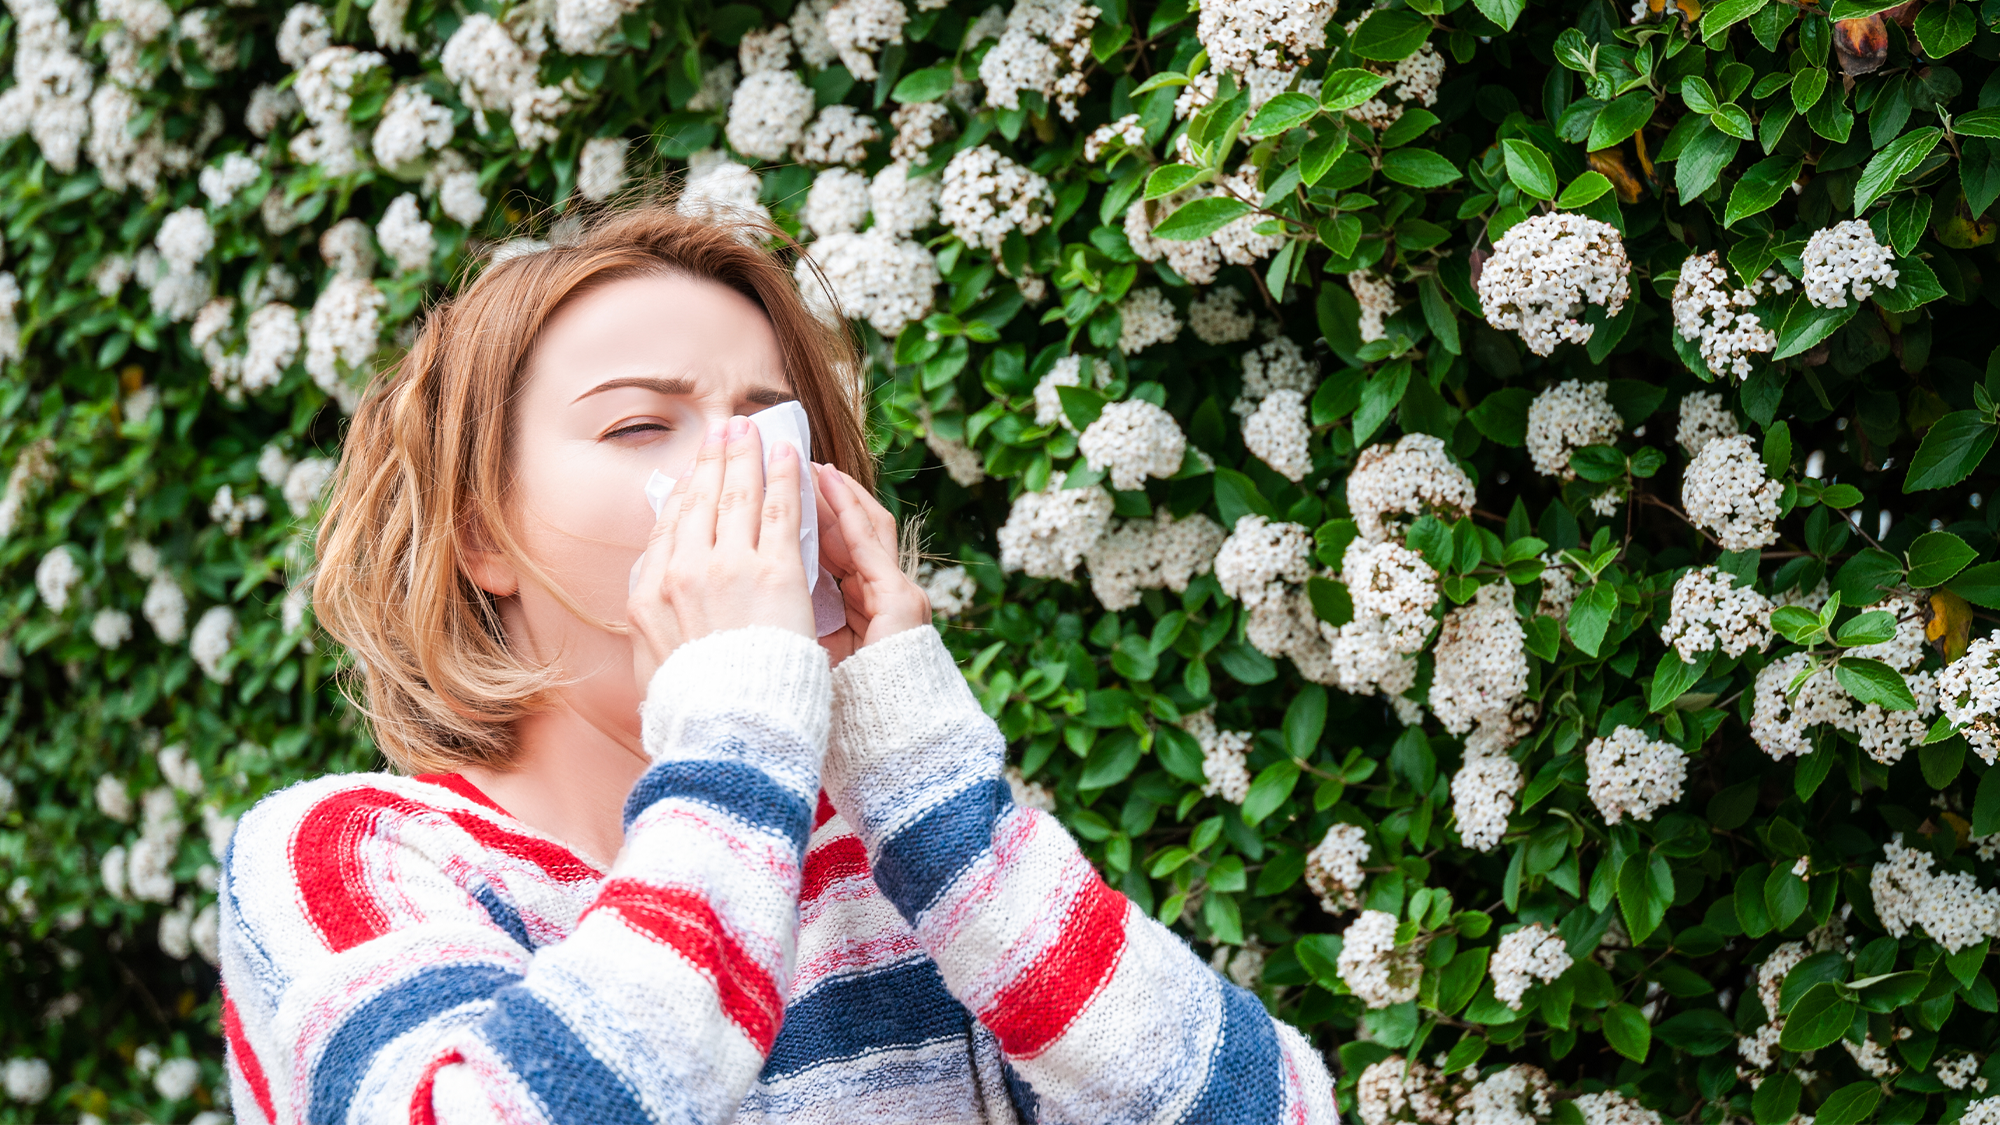 La temporada de alergias primaverales ha comenzado aún más temprano este año